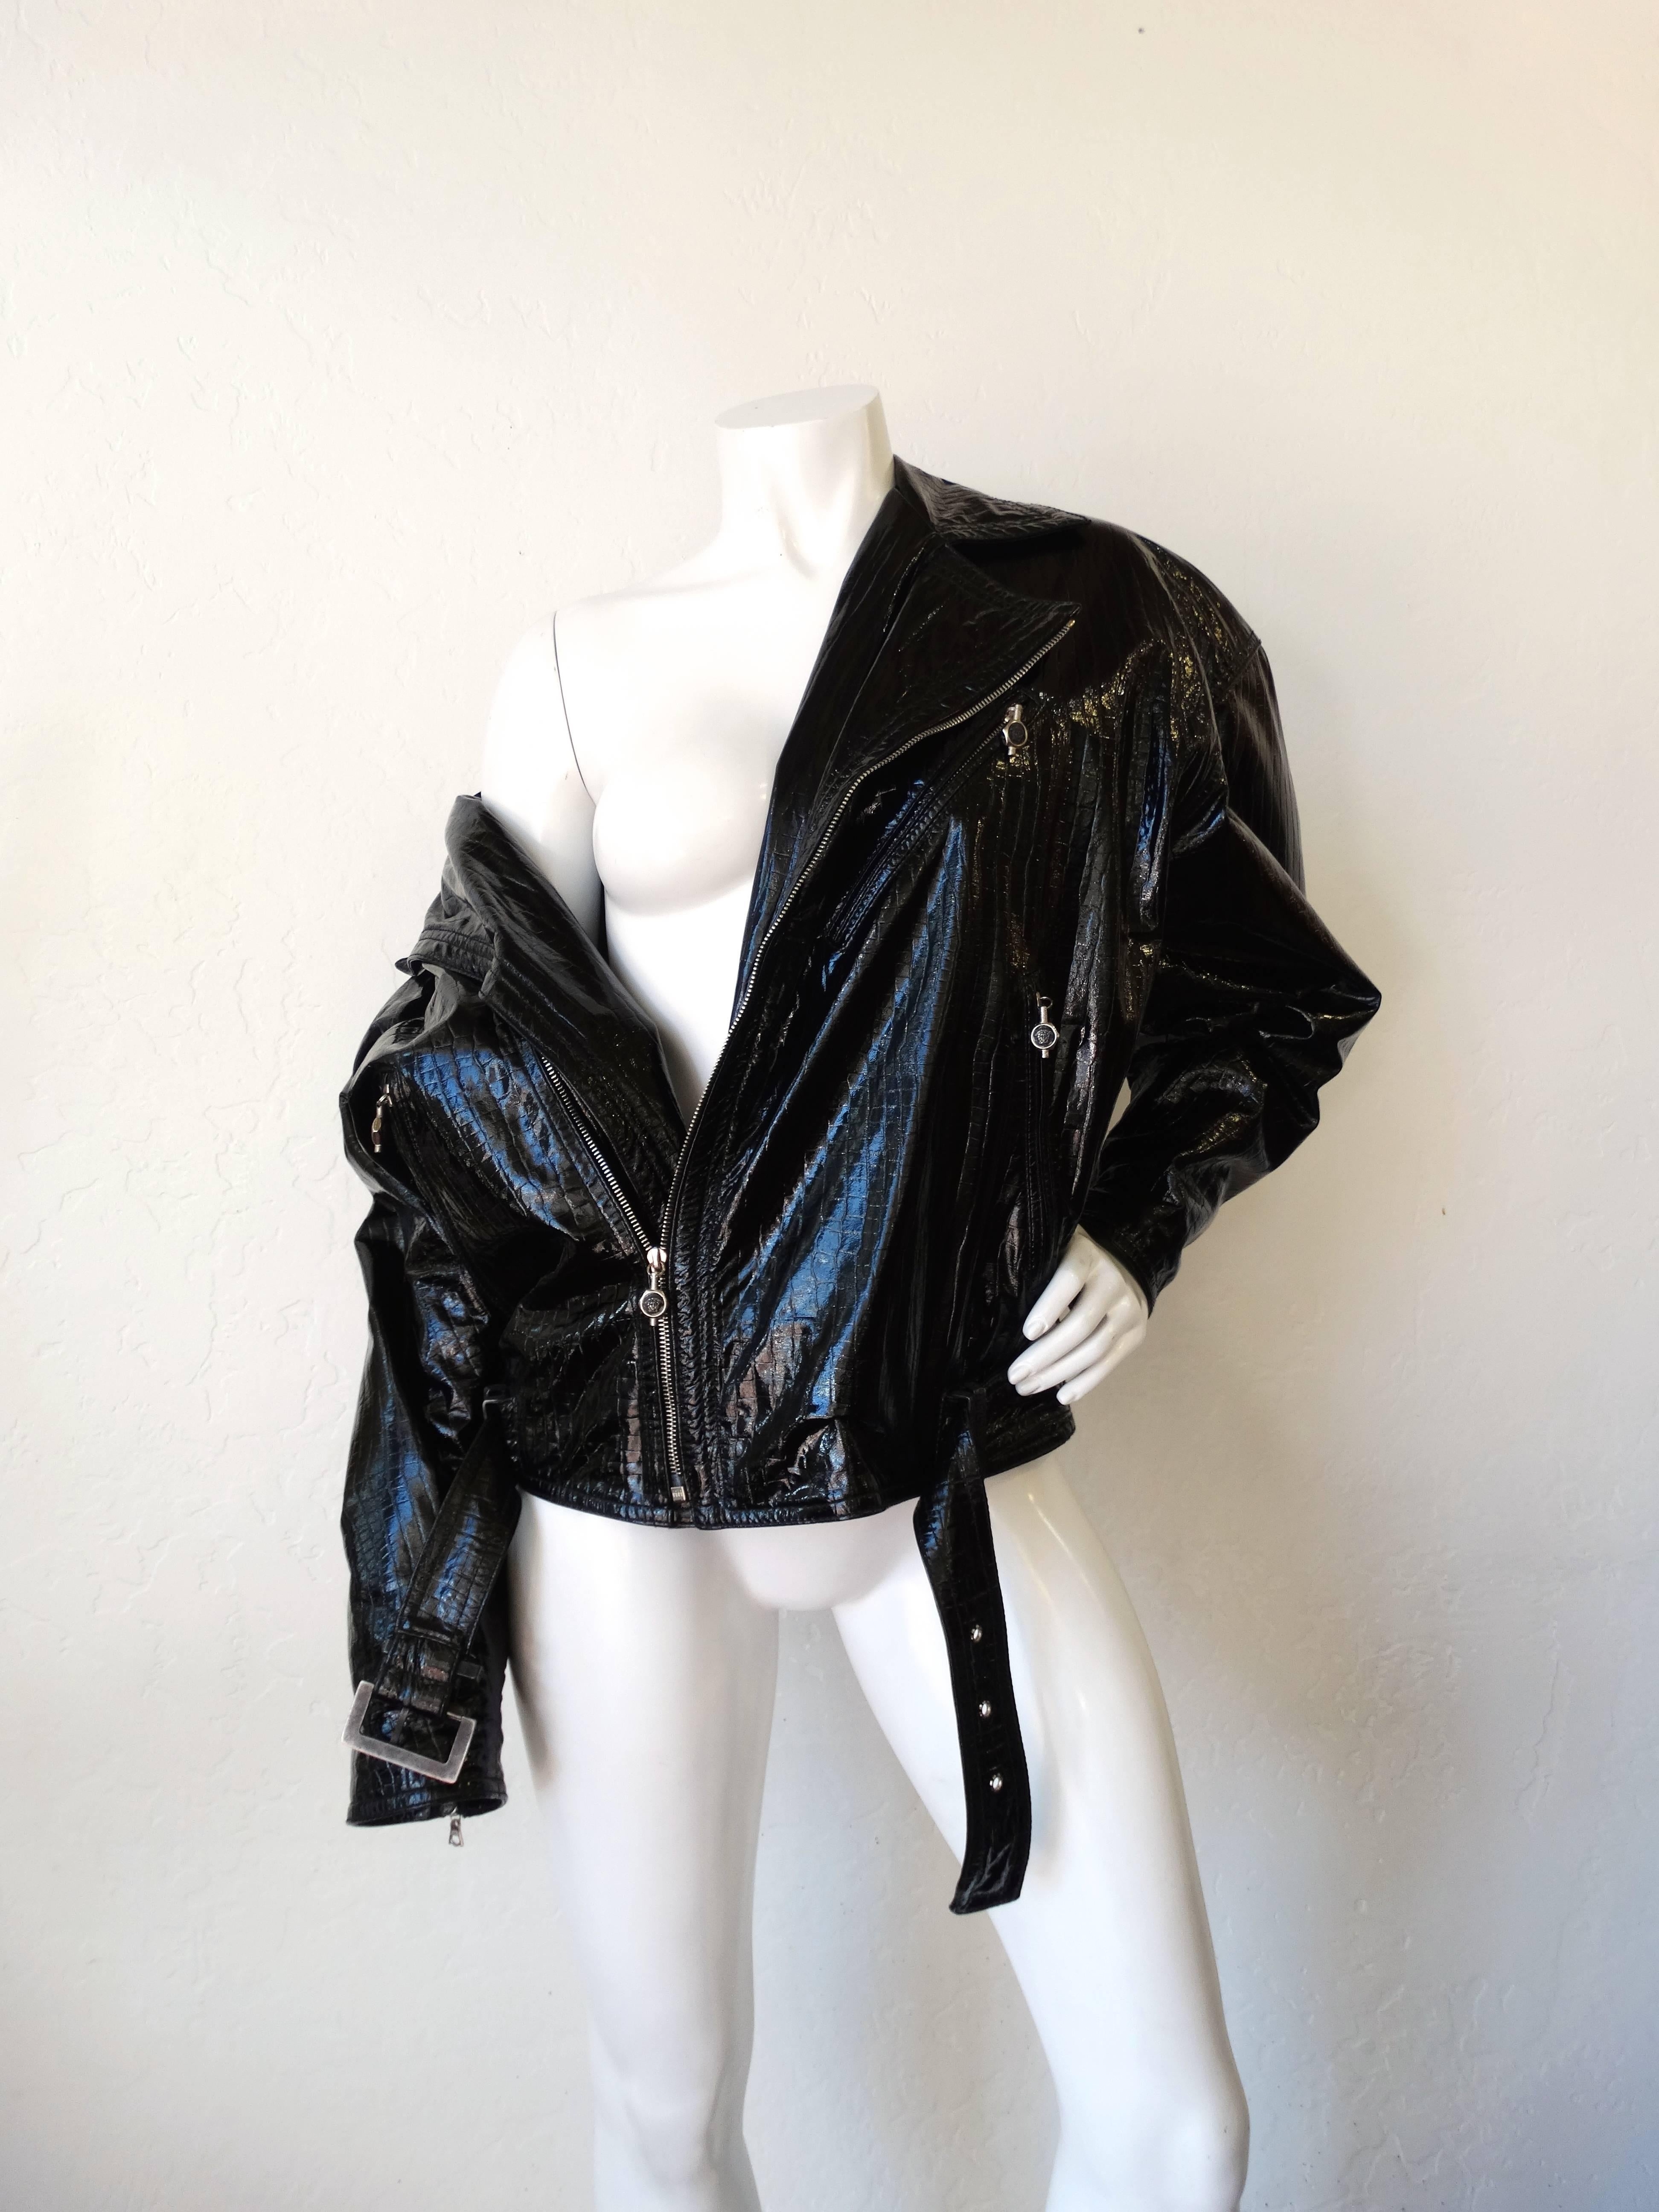 Sichern Sie sich ein ikonisches Stück Versace aus den 1980ern mit unserer unglaublichen Motorradjacke aus Lackleder! Gefertigt aus super glänzendem, alligatorgeprägtem Lackleder und gefüttert mit dem charakteristischen Versace Medusa-Kopfdruck aus